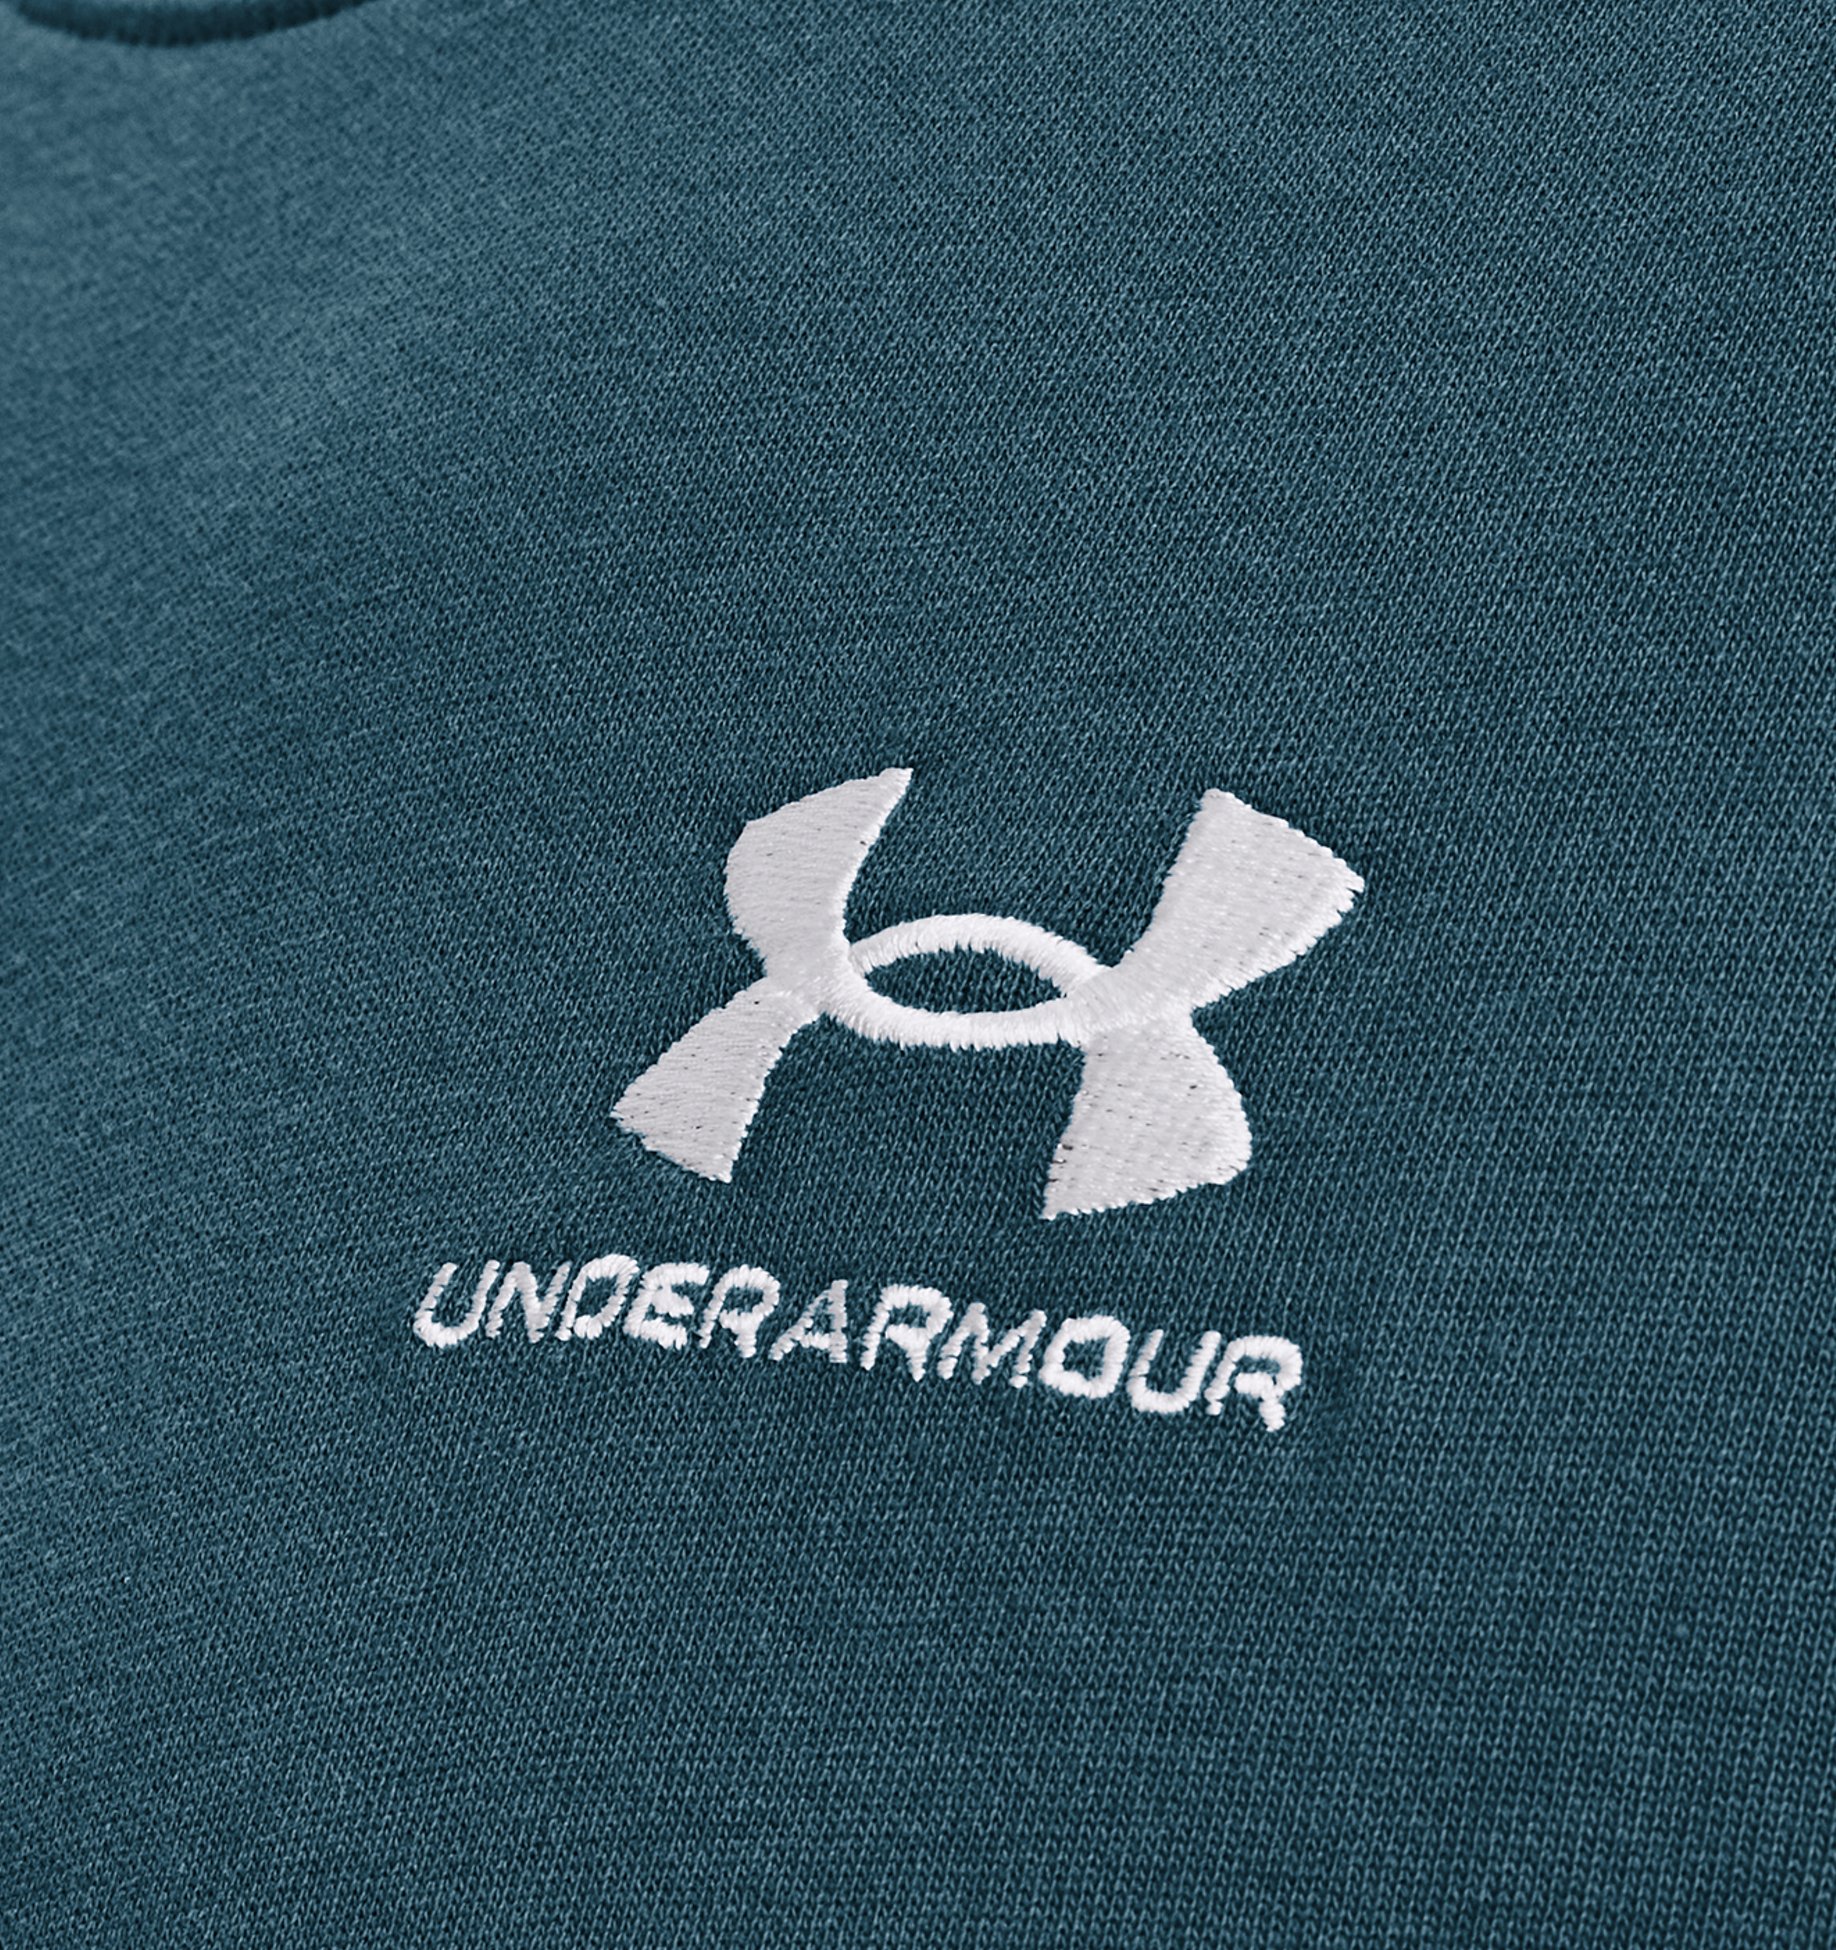 Maglia a maniche corte UA Logo Embroidered Heavyweight da uomo